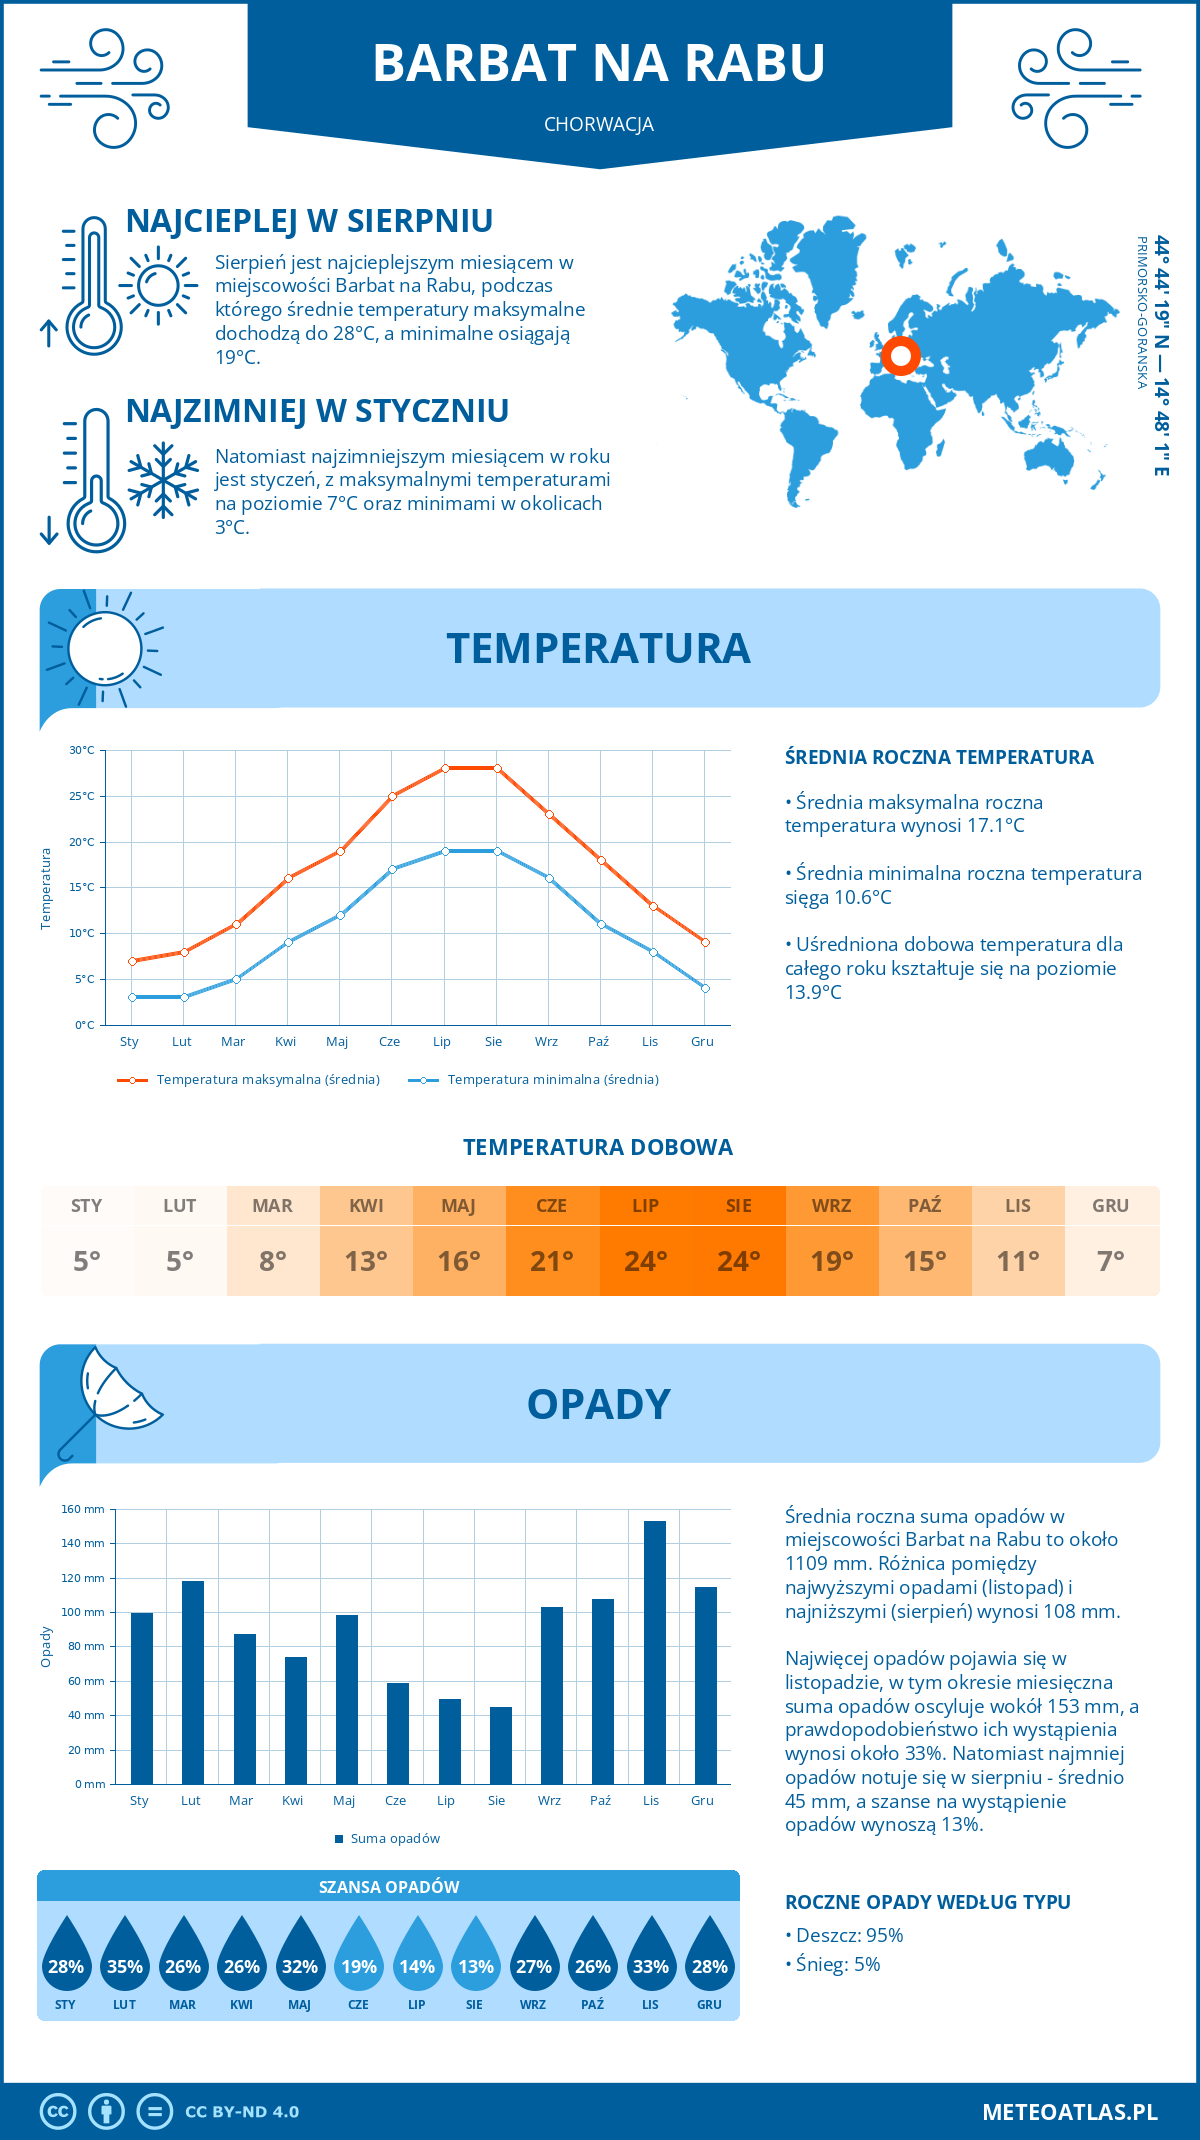 Pogoda Barbat na Rabu (Chorwacja). Temperatura oraz opady.